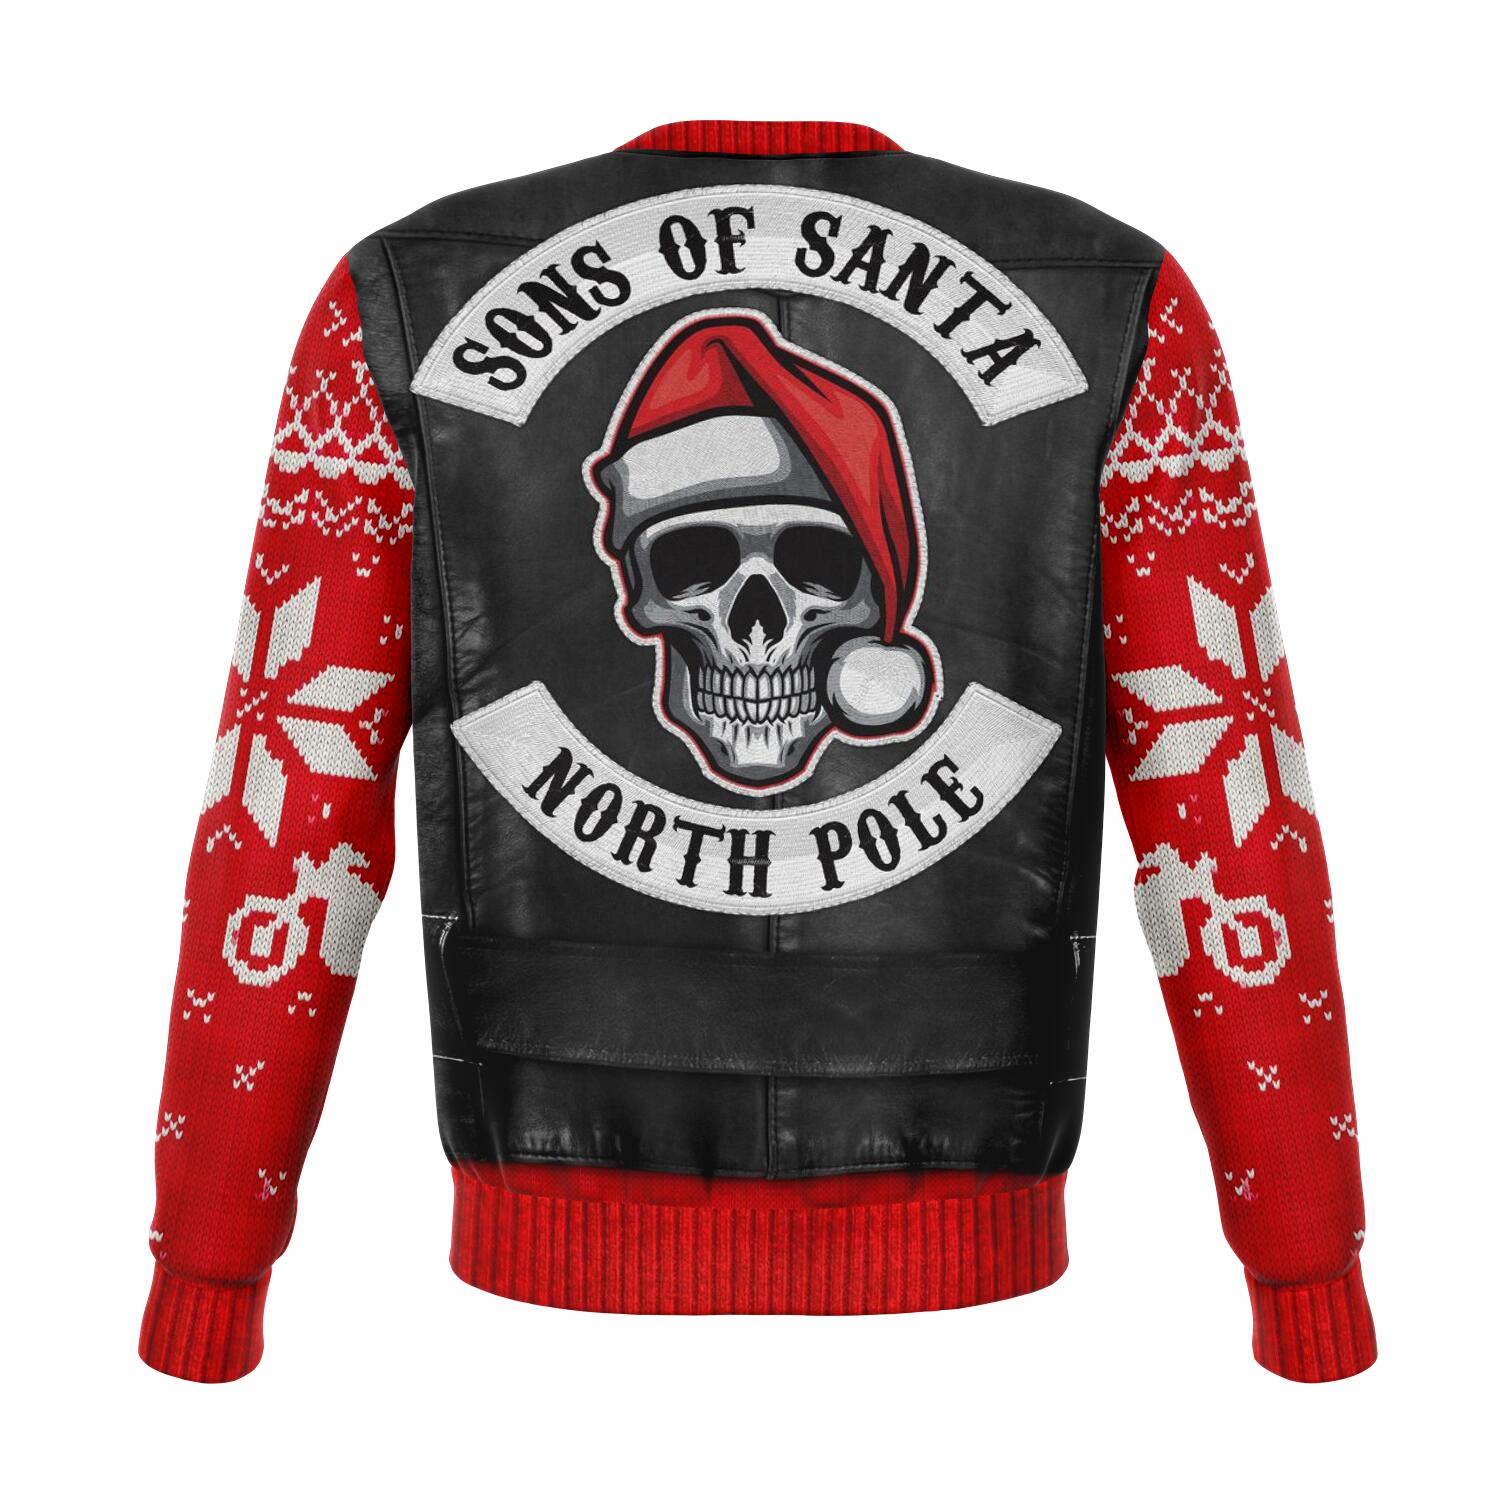 Sons Of Santa - North Pole Chapter. Fun Xmas Sweatshirt - back view